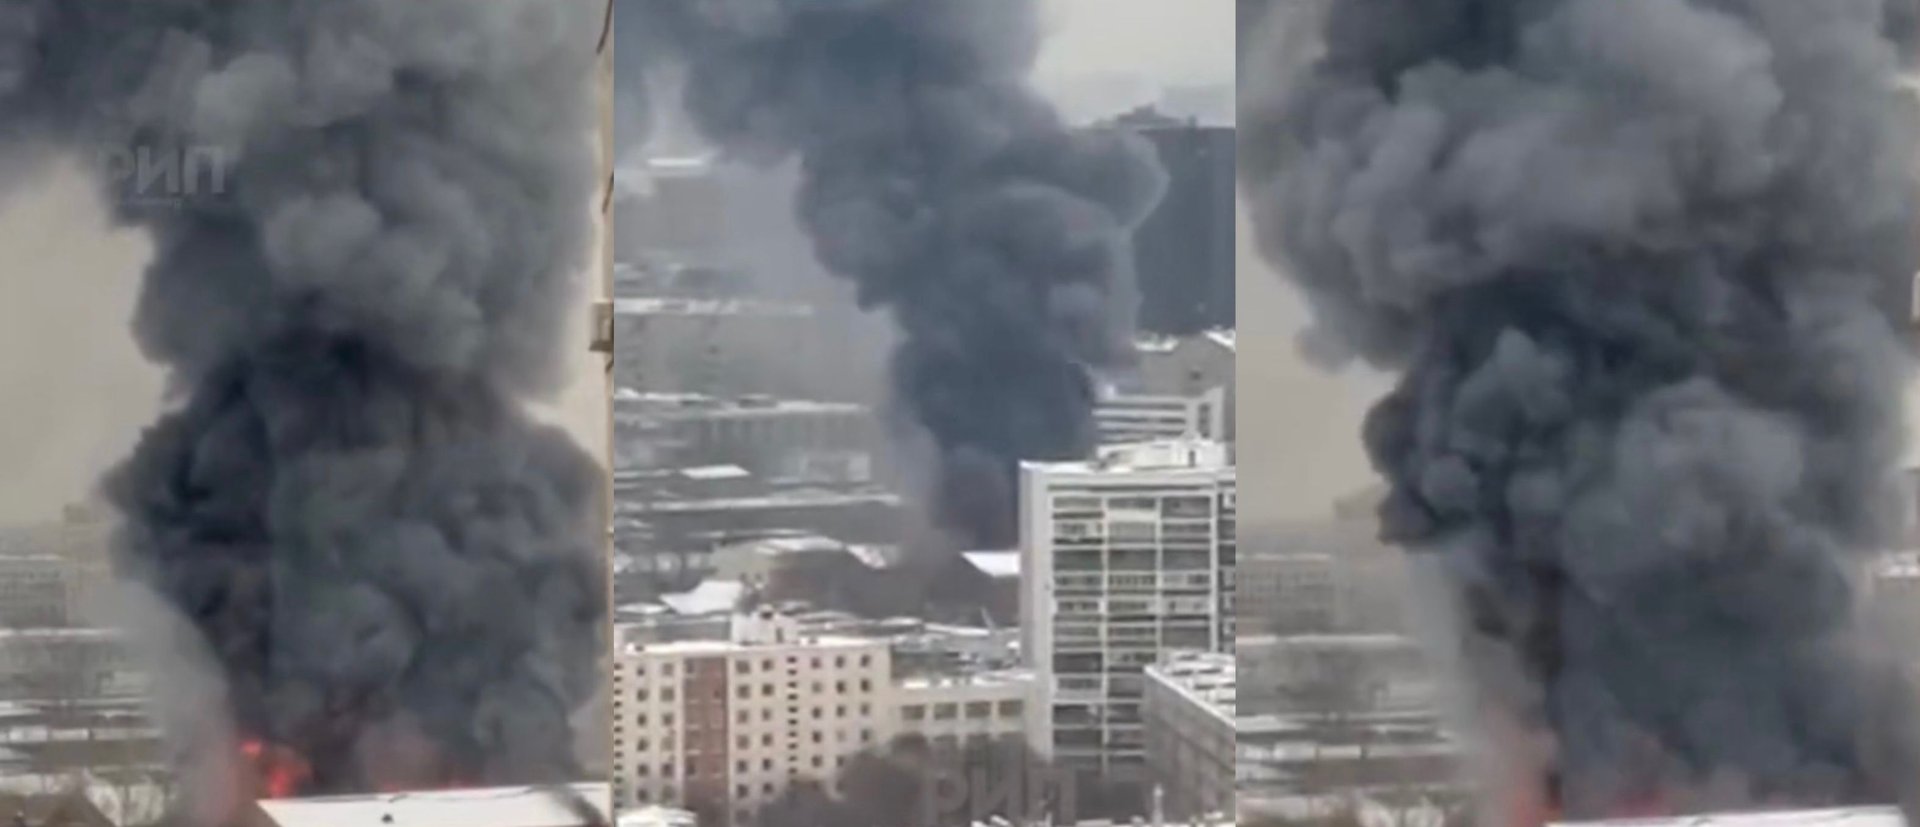 W centrum Moskwy wybuchł ogromny pożar.